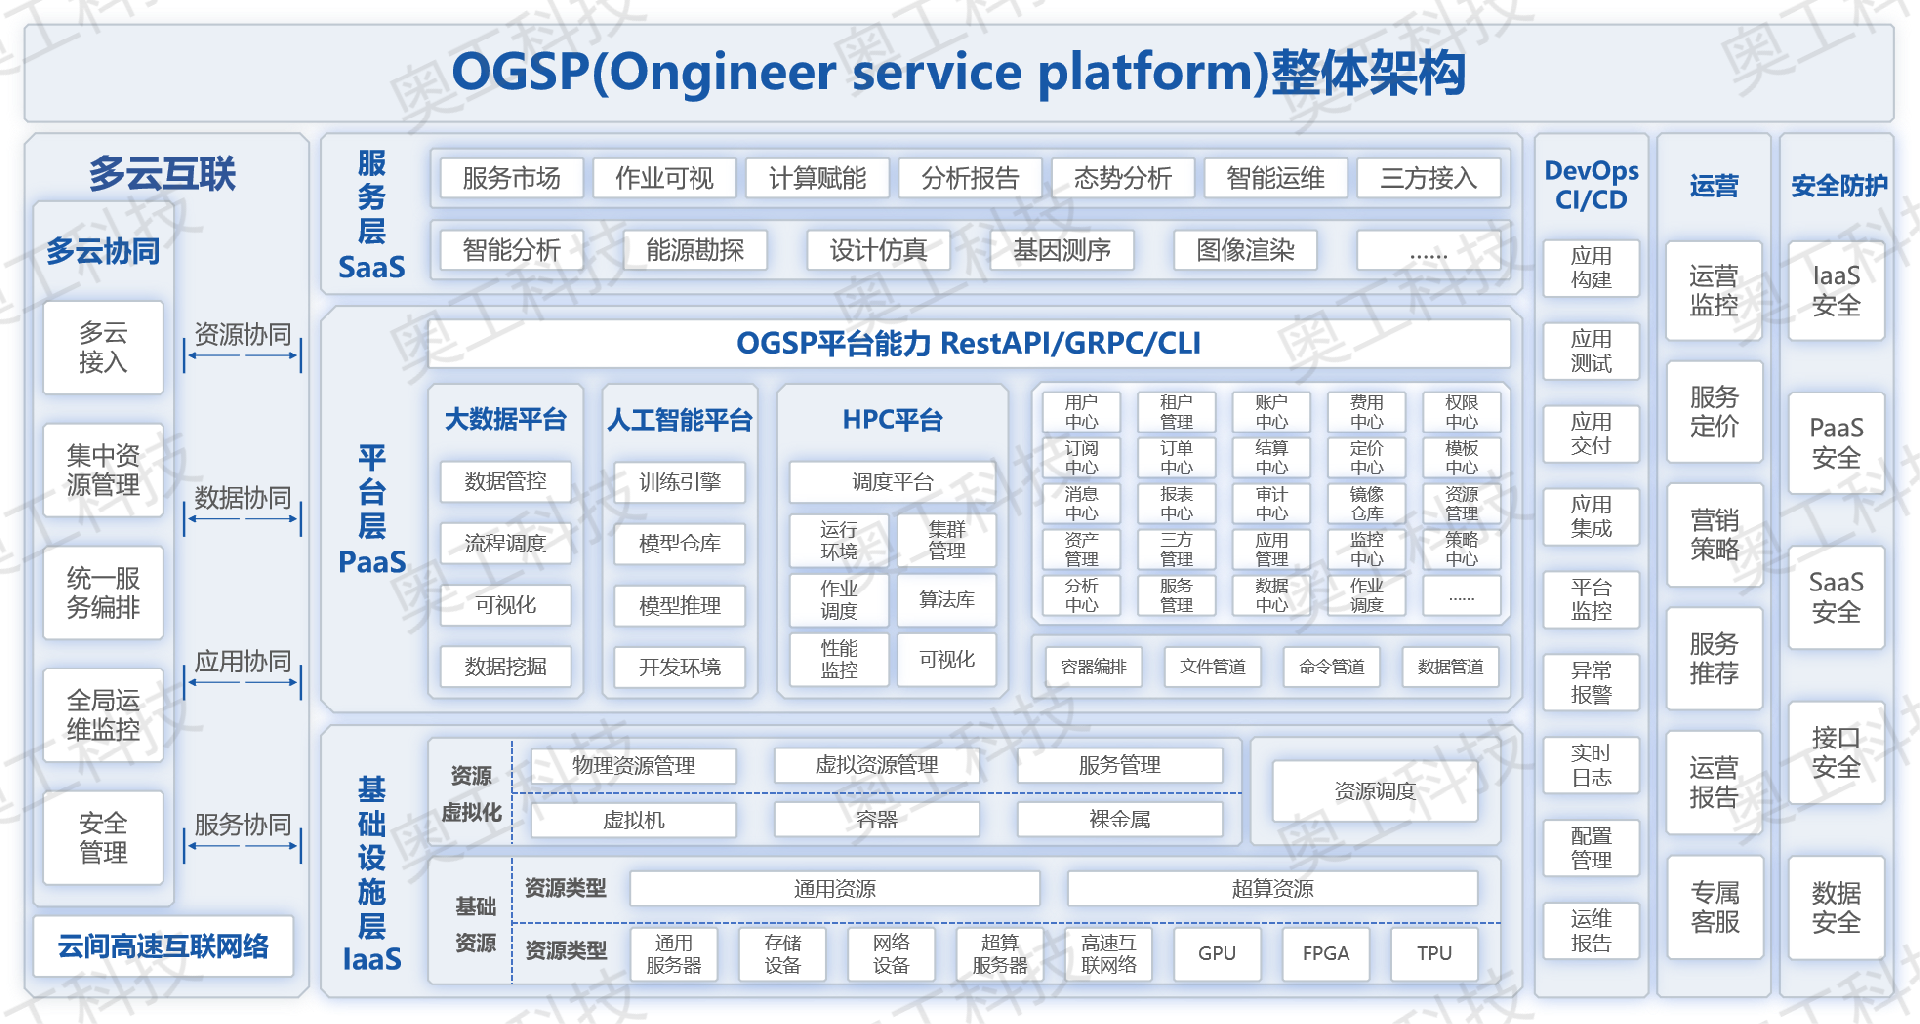 水印版浅色OGSP架构图(1).png